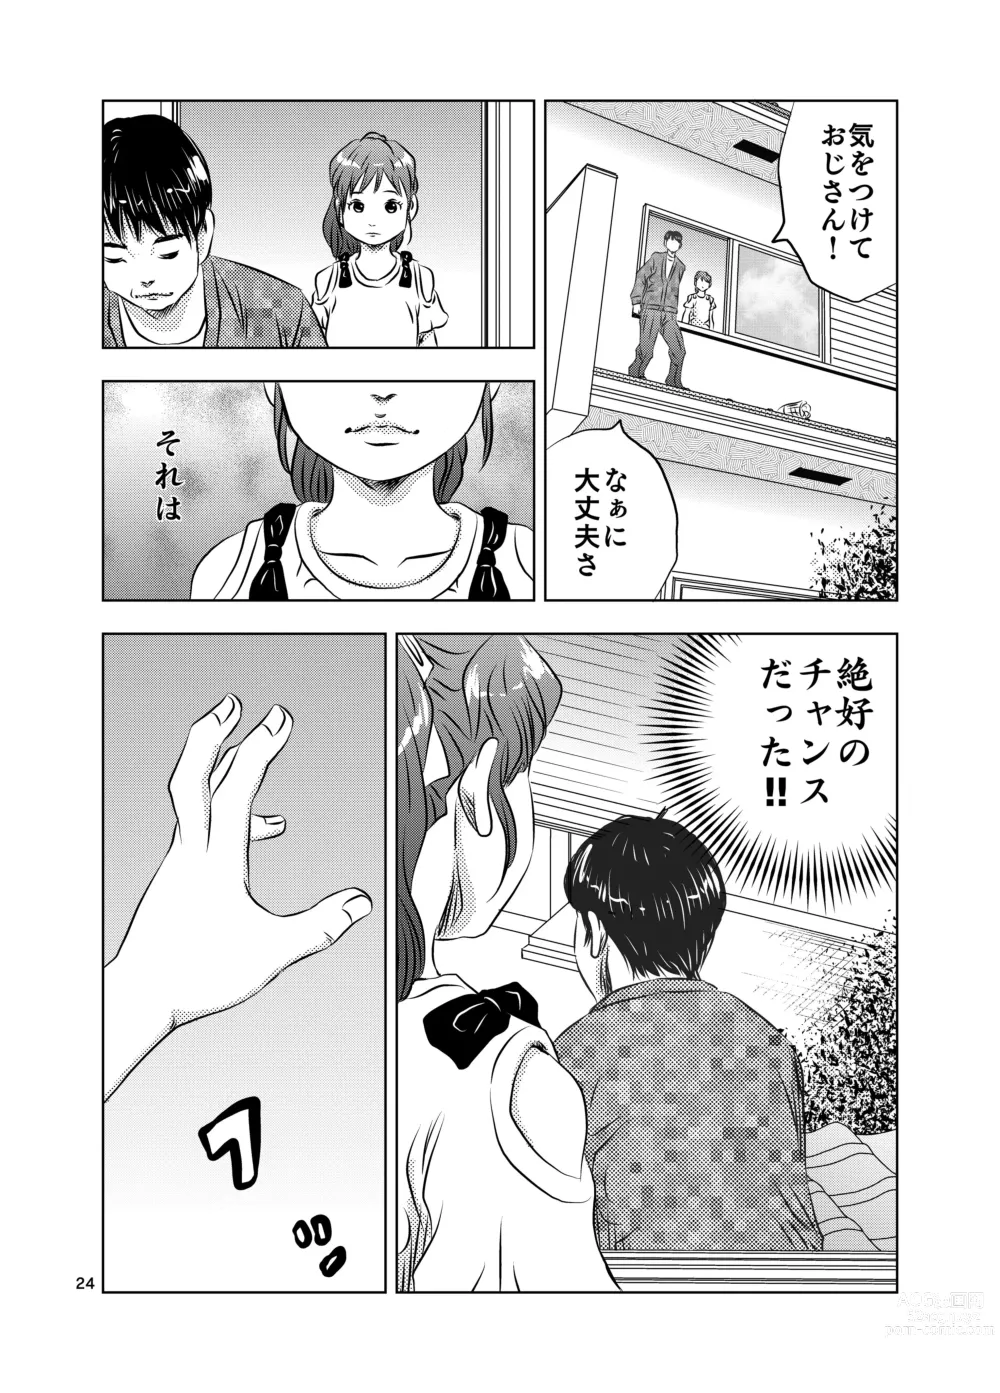 Page 24 of doujinshi Itoko no Aoi-chan